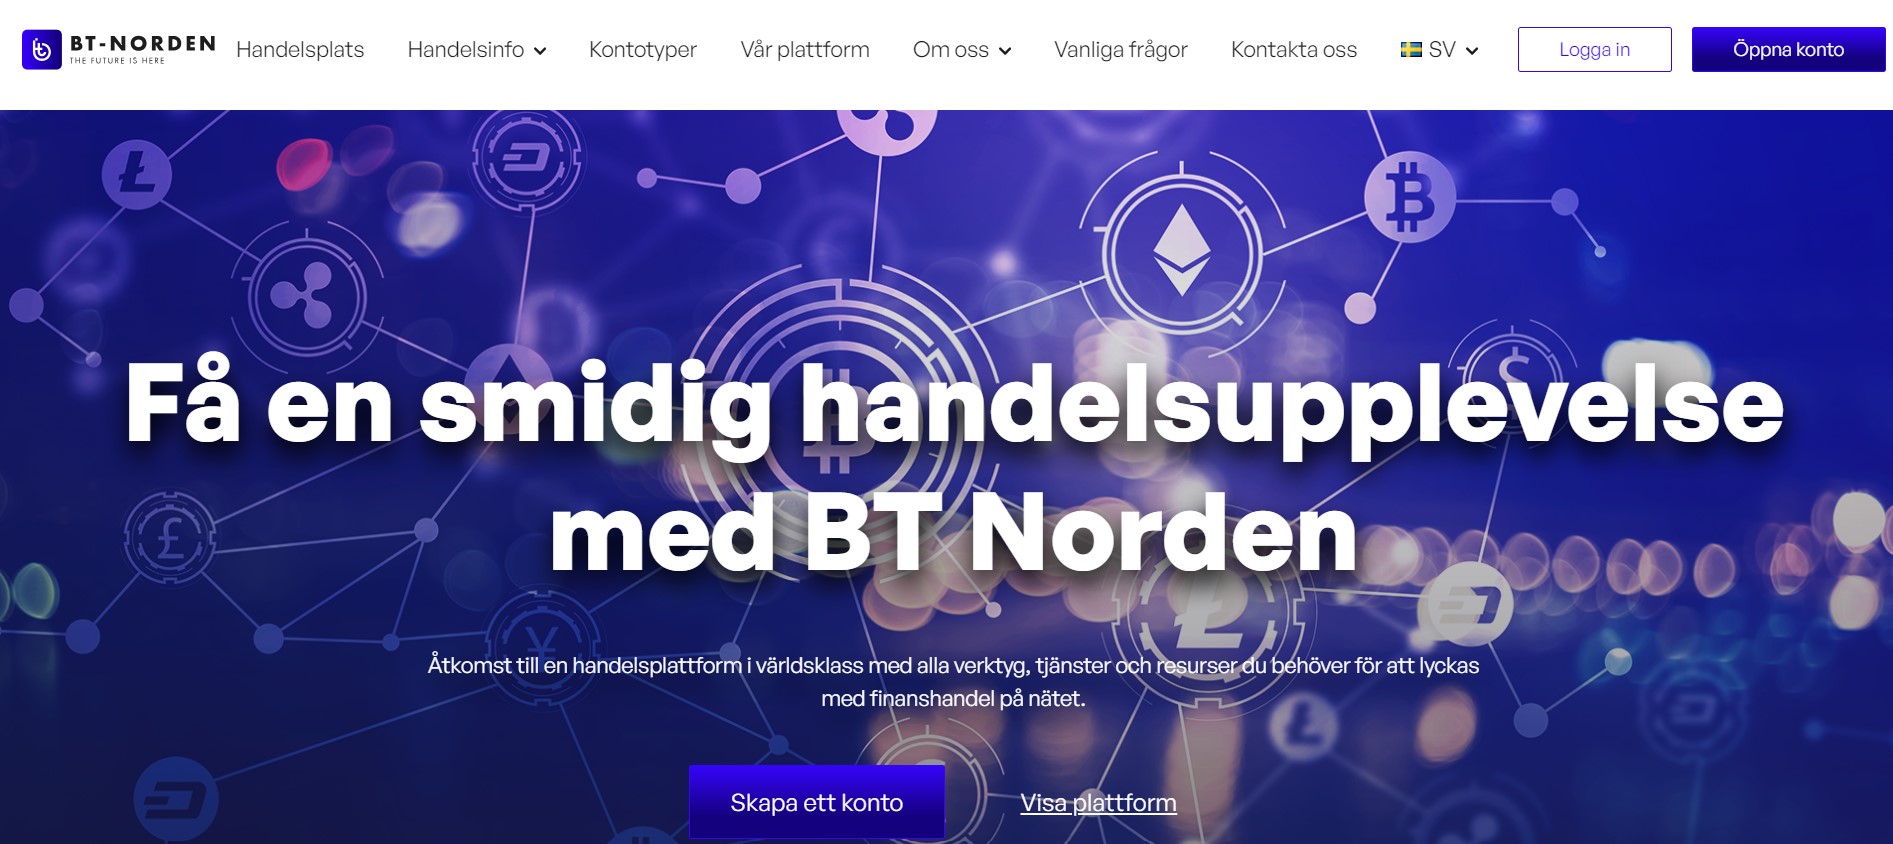 BT-Norden website